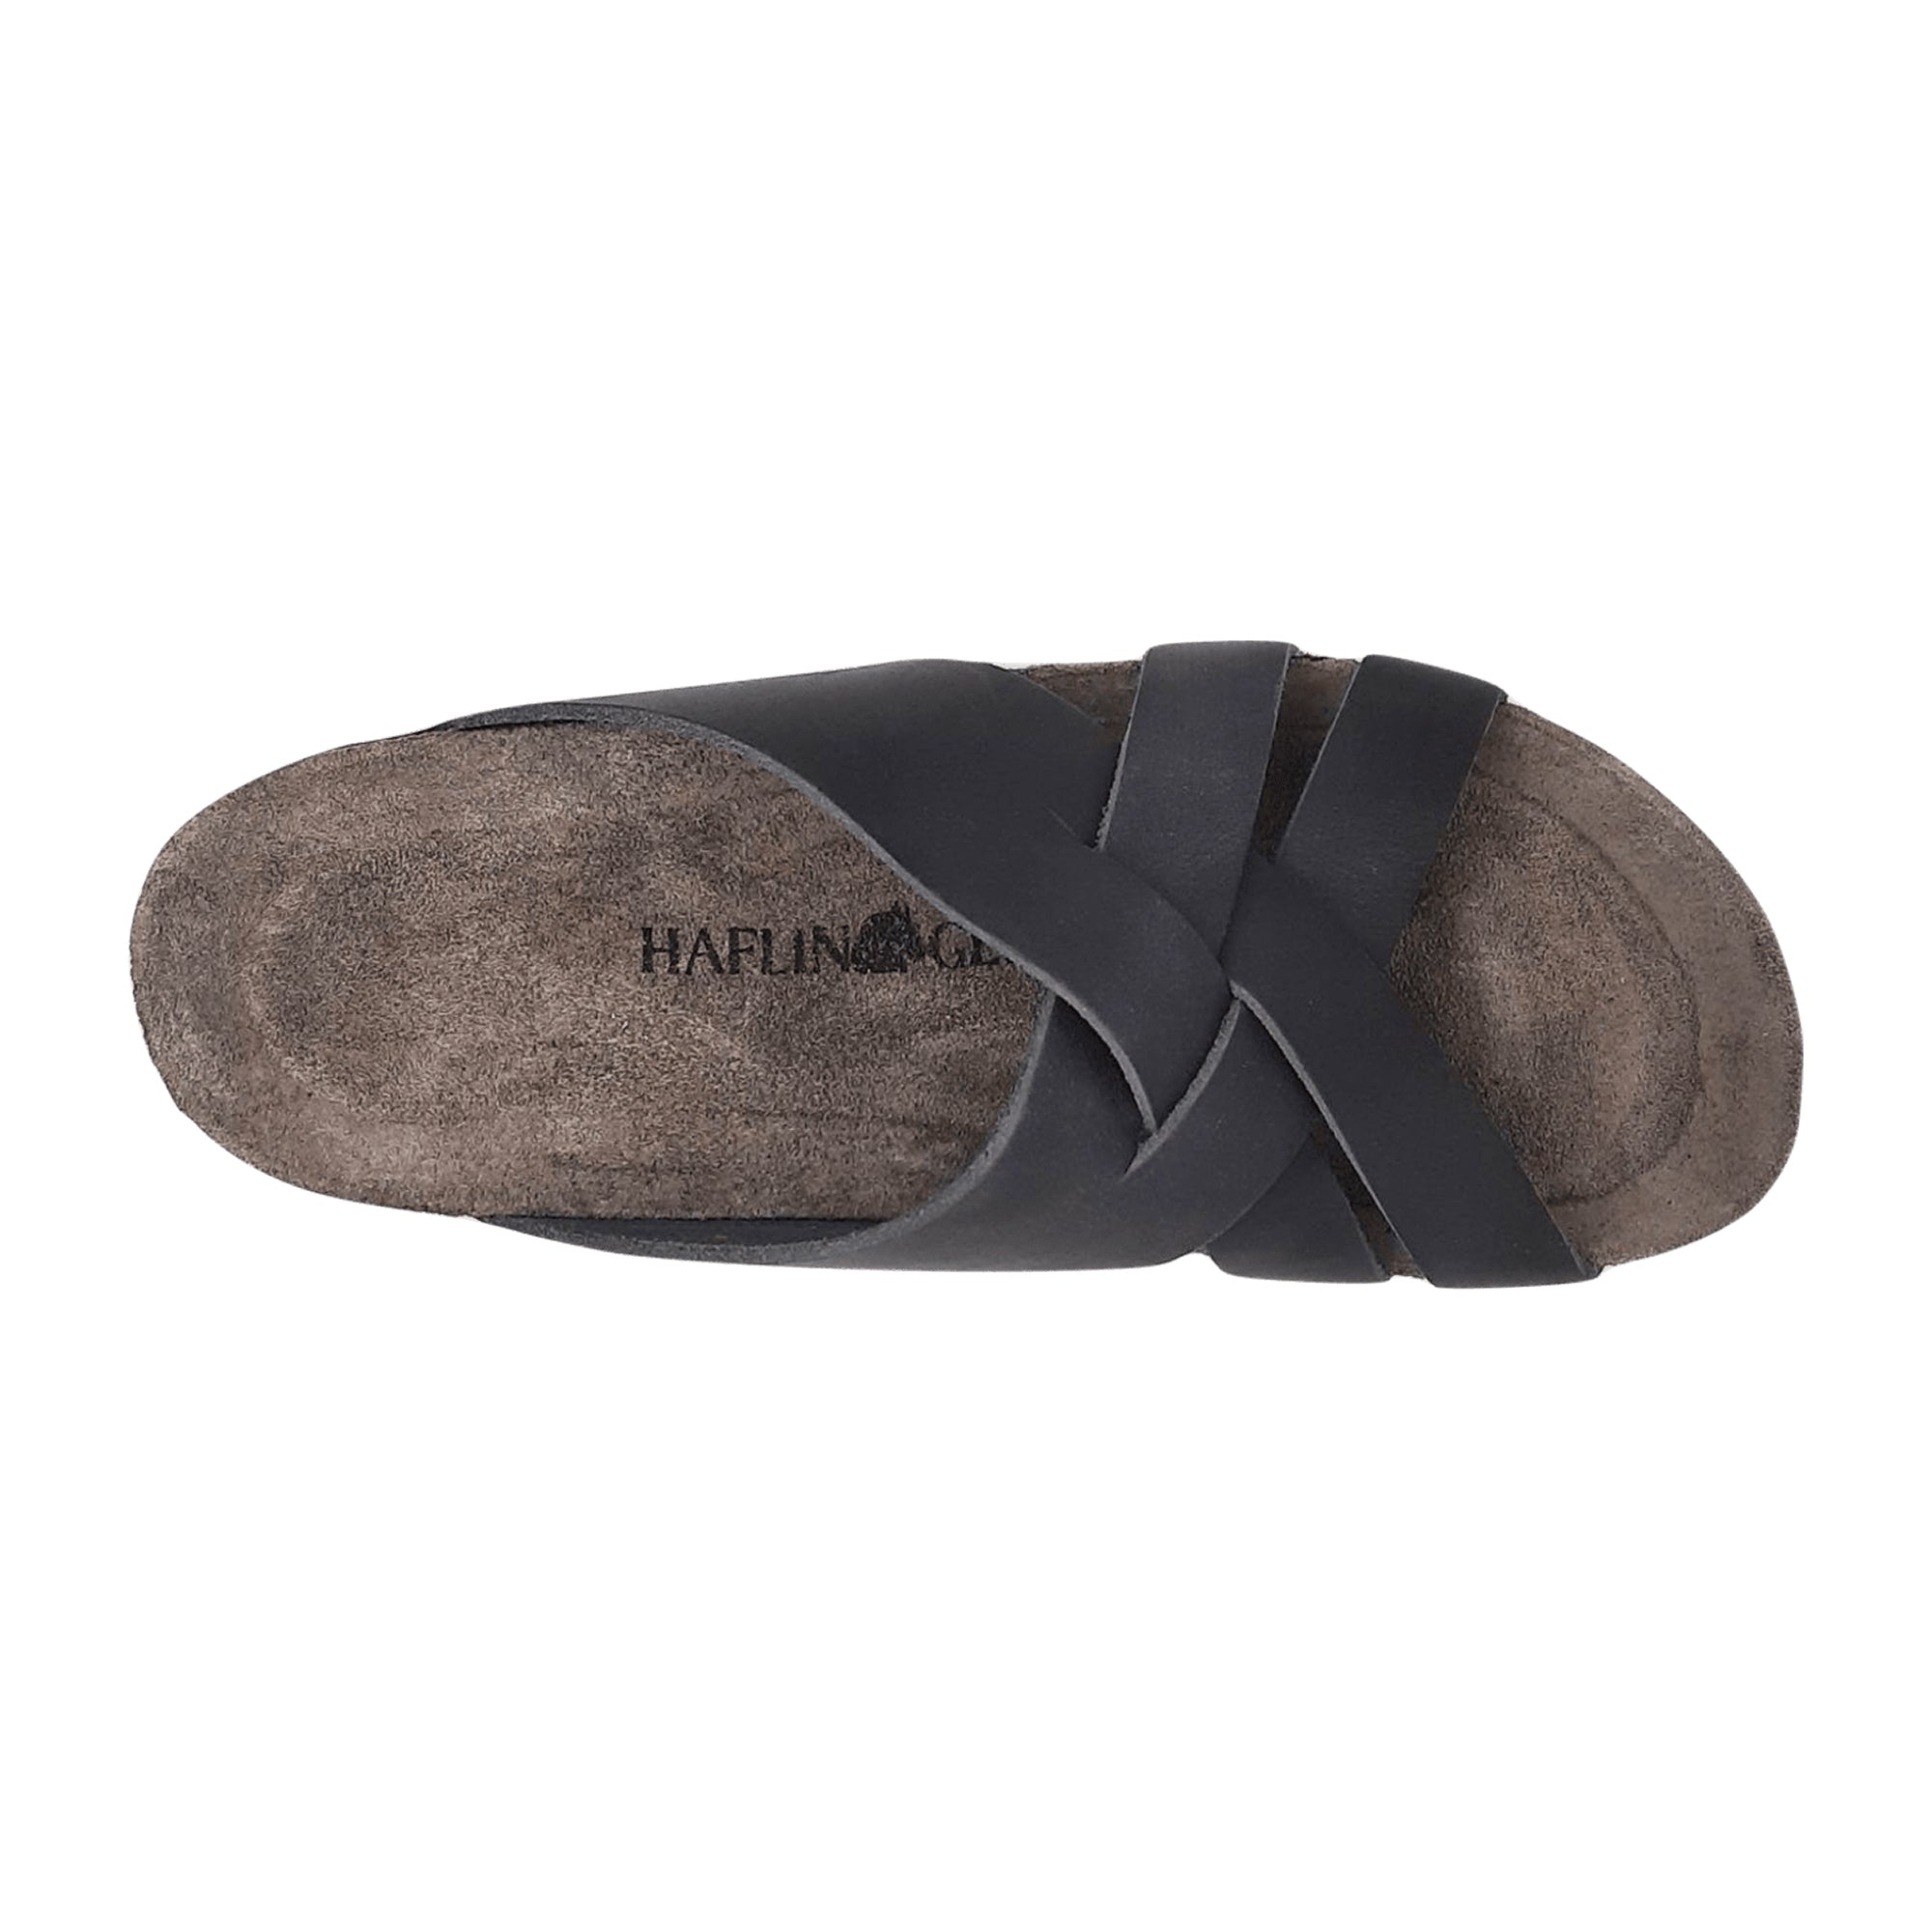 Haflinger Bo Men's Grey Slip-On Wool Clogs